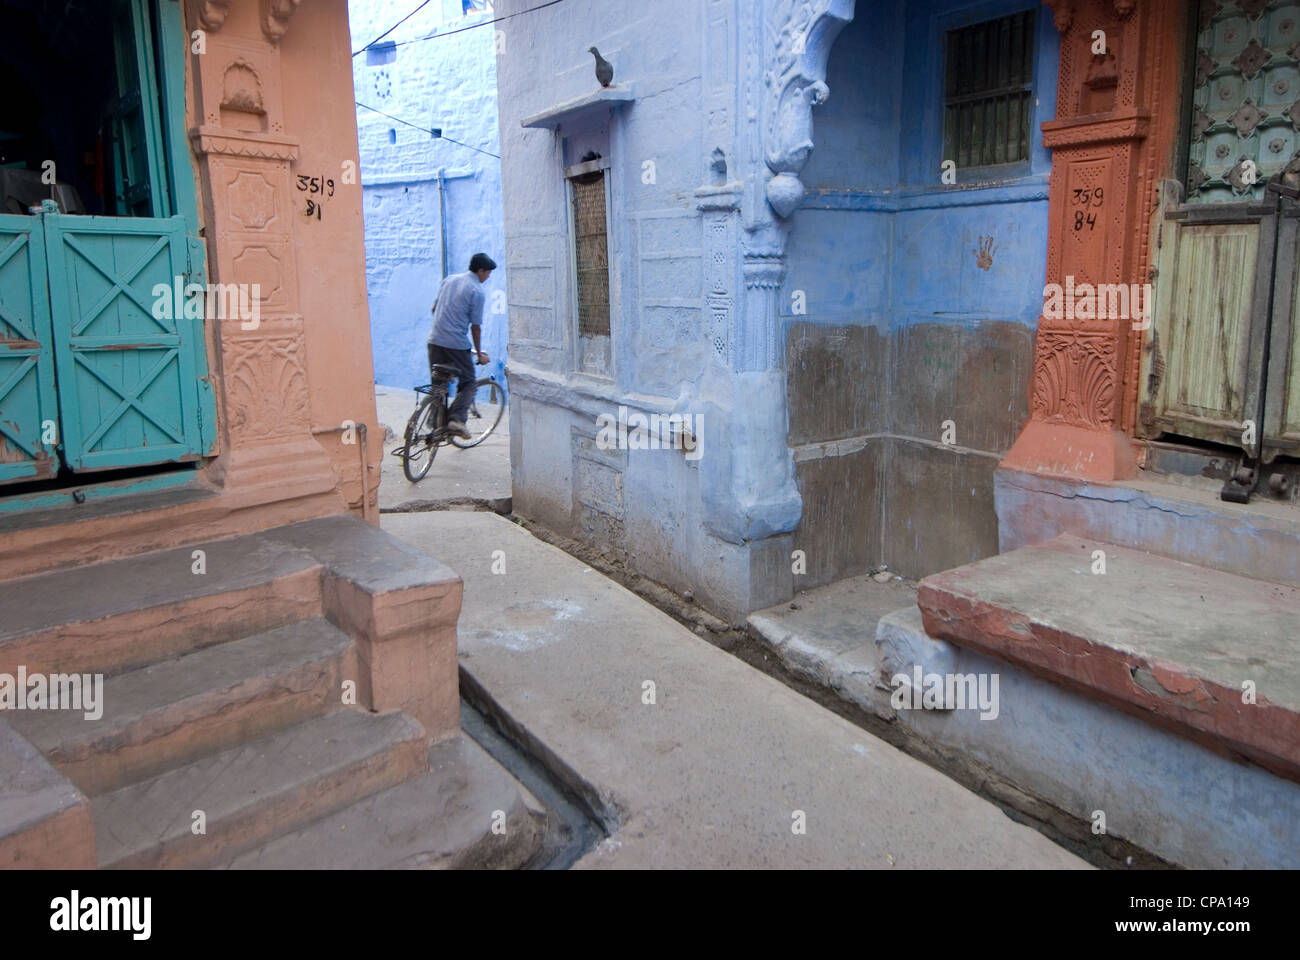 Les murs des habitations à l'intérieur de la vieille ville de Jodhpur sont peintes en bleu pour garder les voies étroites cool et libre de moustiques, Jodhpur, Rajasthan, India Banque D'Images